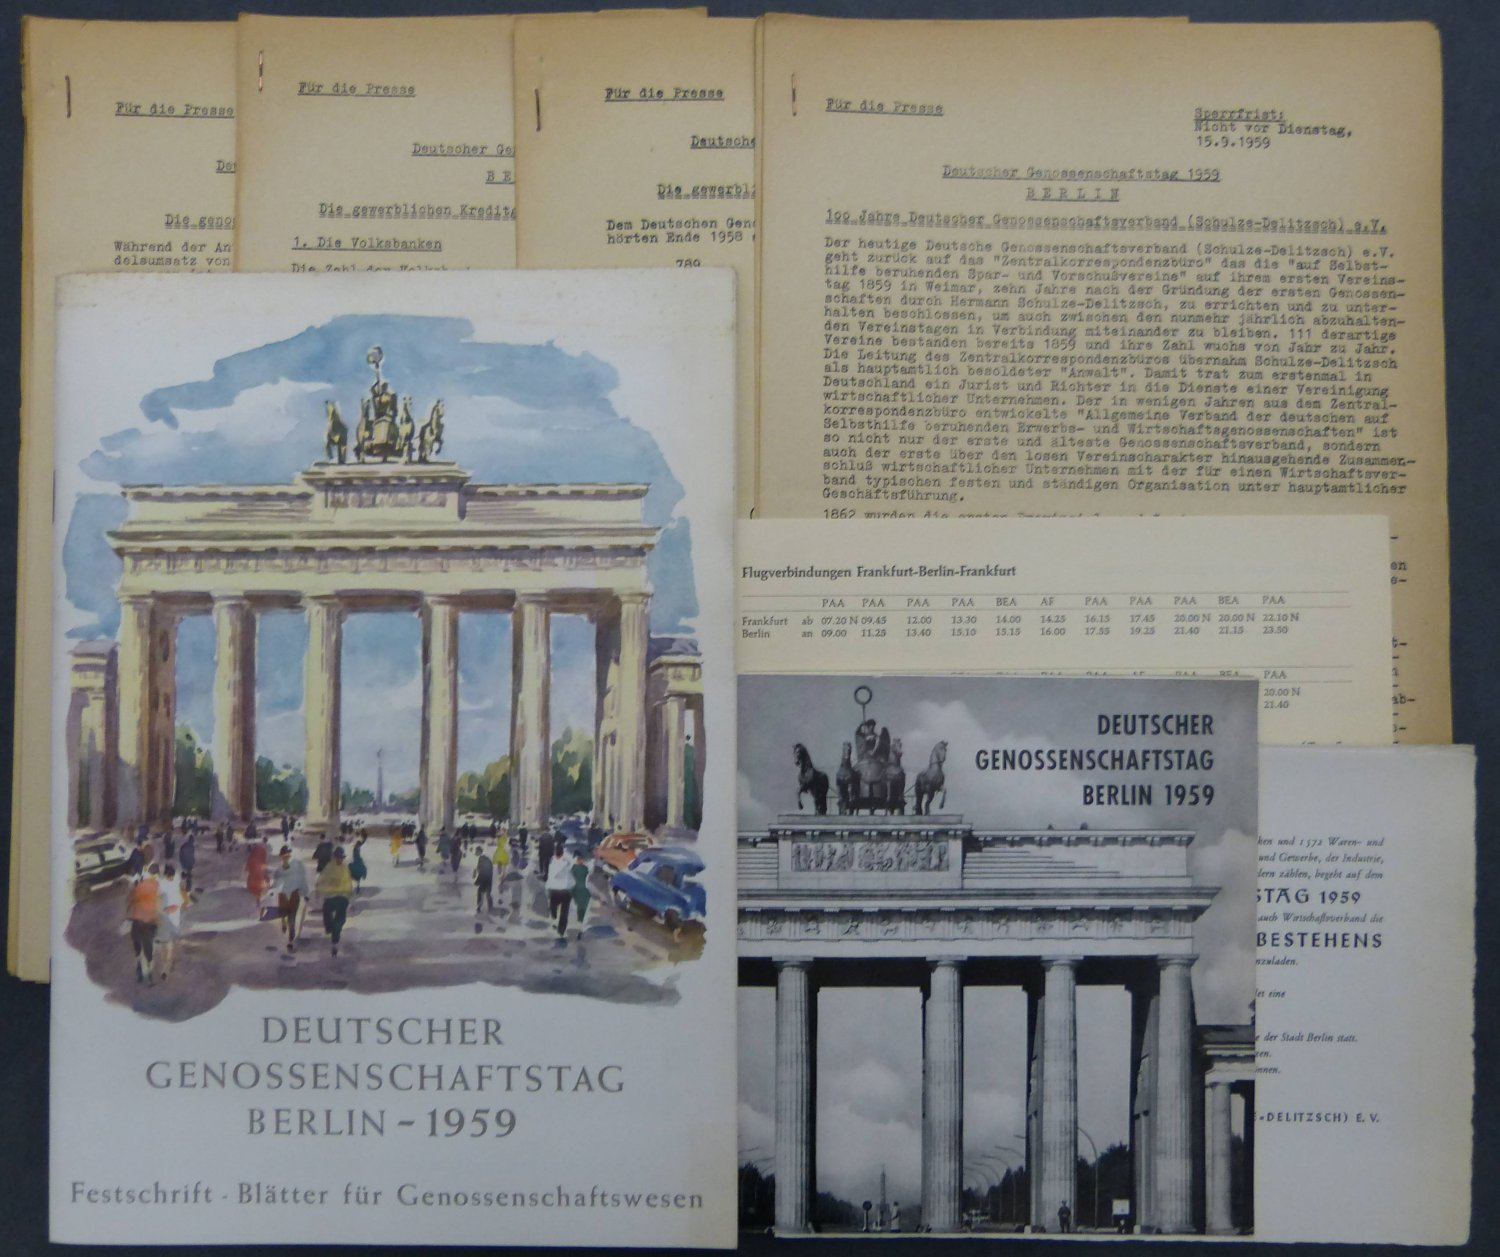 Deutscher Genossenschaftsverband (Schulze-Delitzsch) e. V. [Herausgeber]:  Deutscher Genossenschaftstag Berlin 1959. (Konvolut mit Publikationen zur 100-Jahrfeier des Deutschen Genossenschaftsverbandes). 